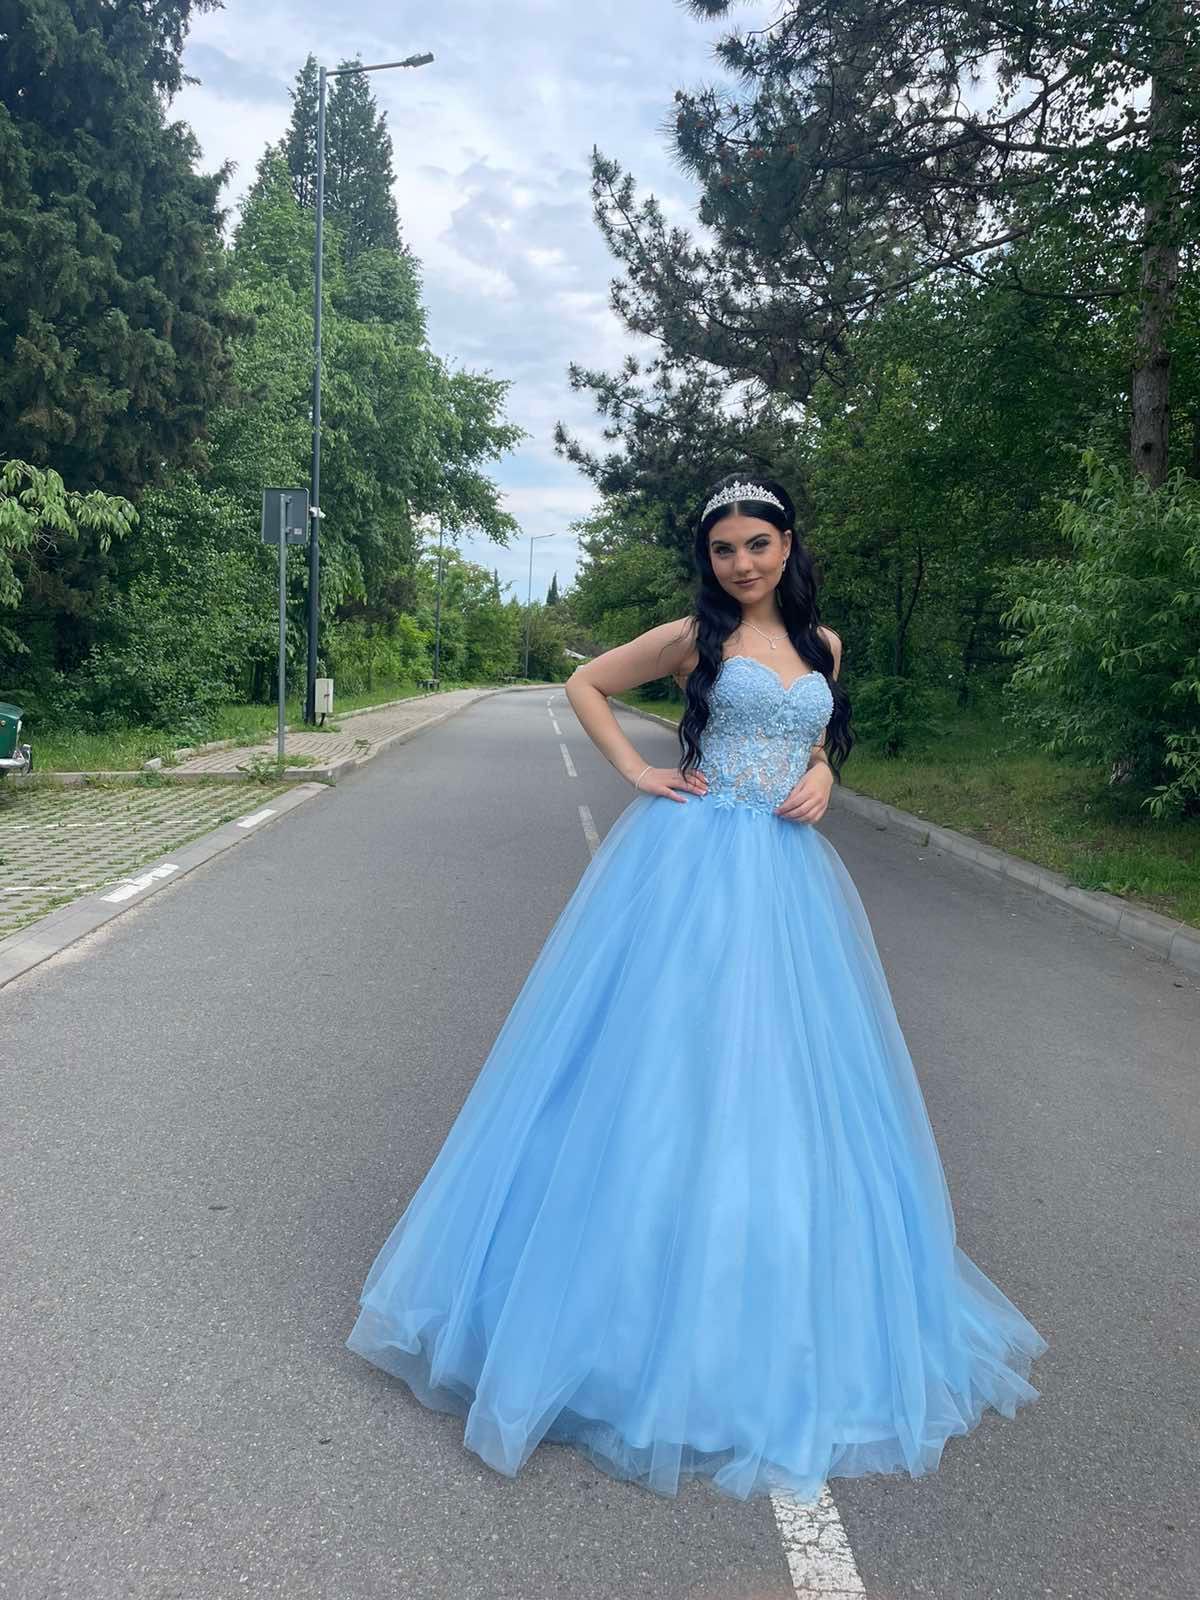 Бална рокля тип принцеса в светло син цвят и обувки